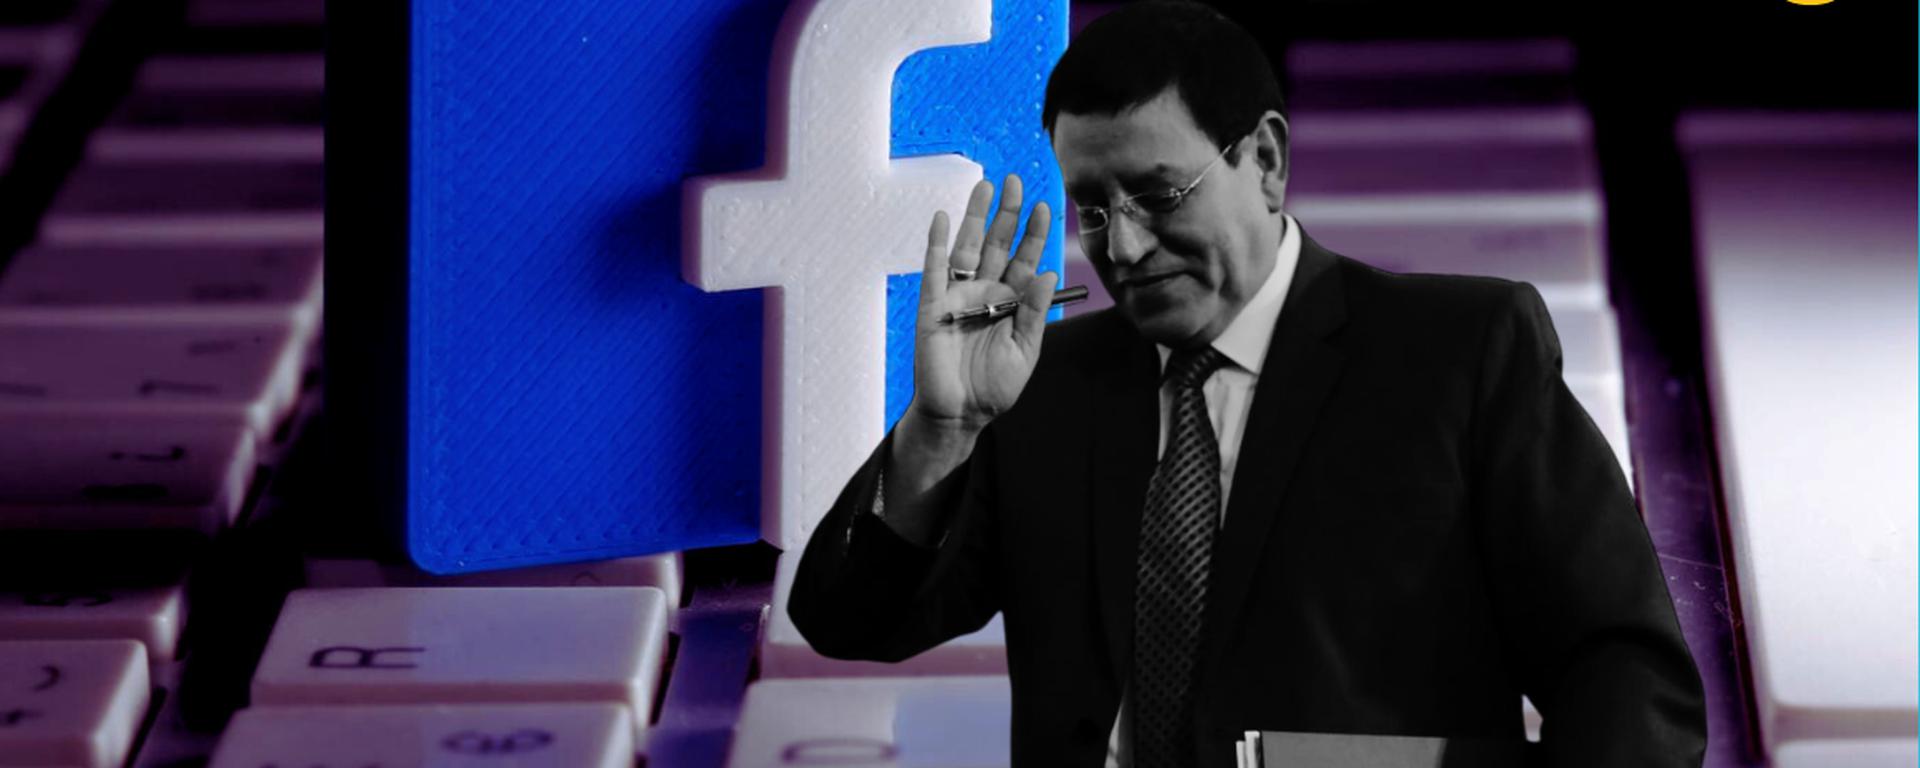 Alejandro Soto investigado: ¿Cuánto gastó en publicidad para sus redes sociales? y todos los detalles del caso